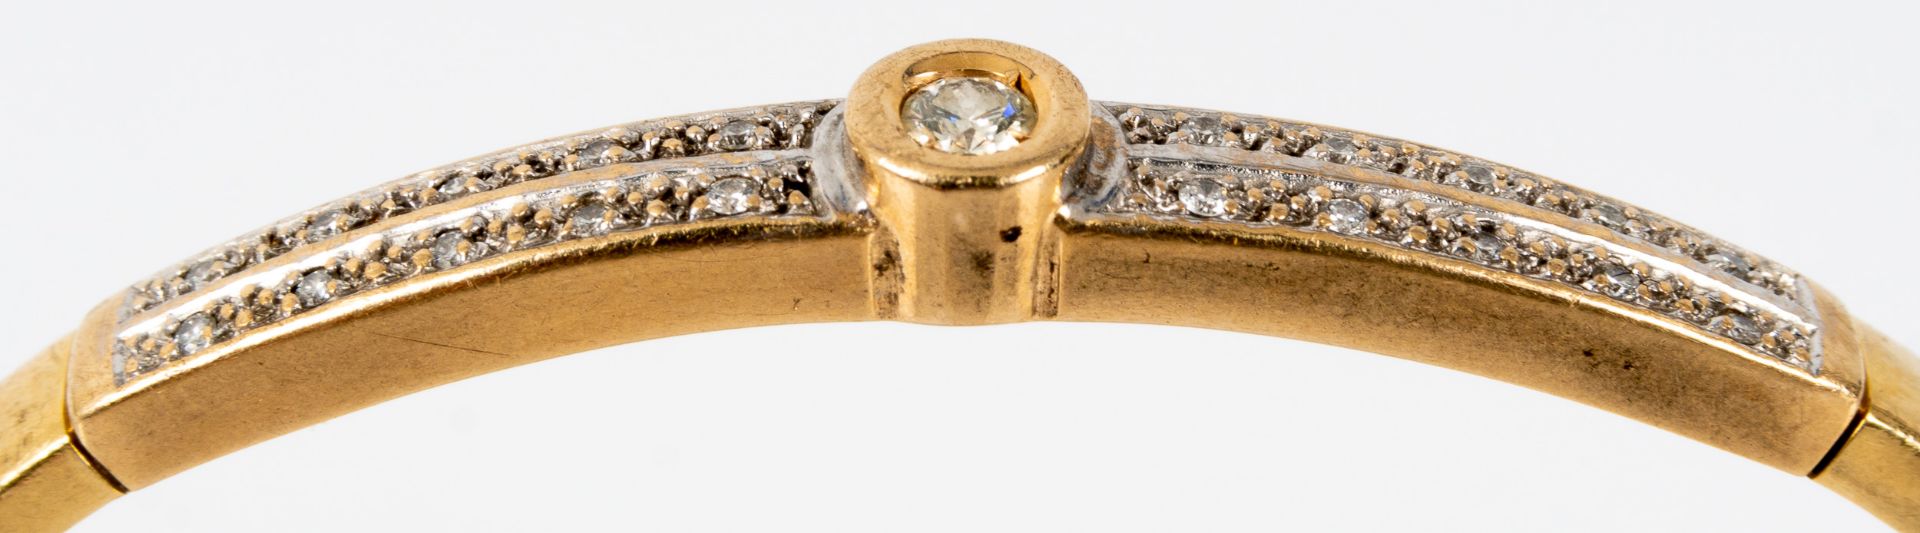 Armreif, 585er Gelbgold, hohle Fassung. Oberseitig 21 winzige Diamanten in Zweierreihen, mittig 1 r - Image 8 of 9